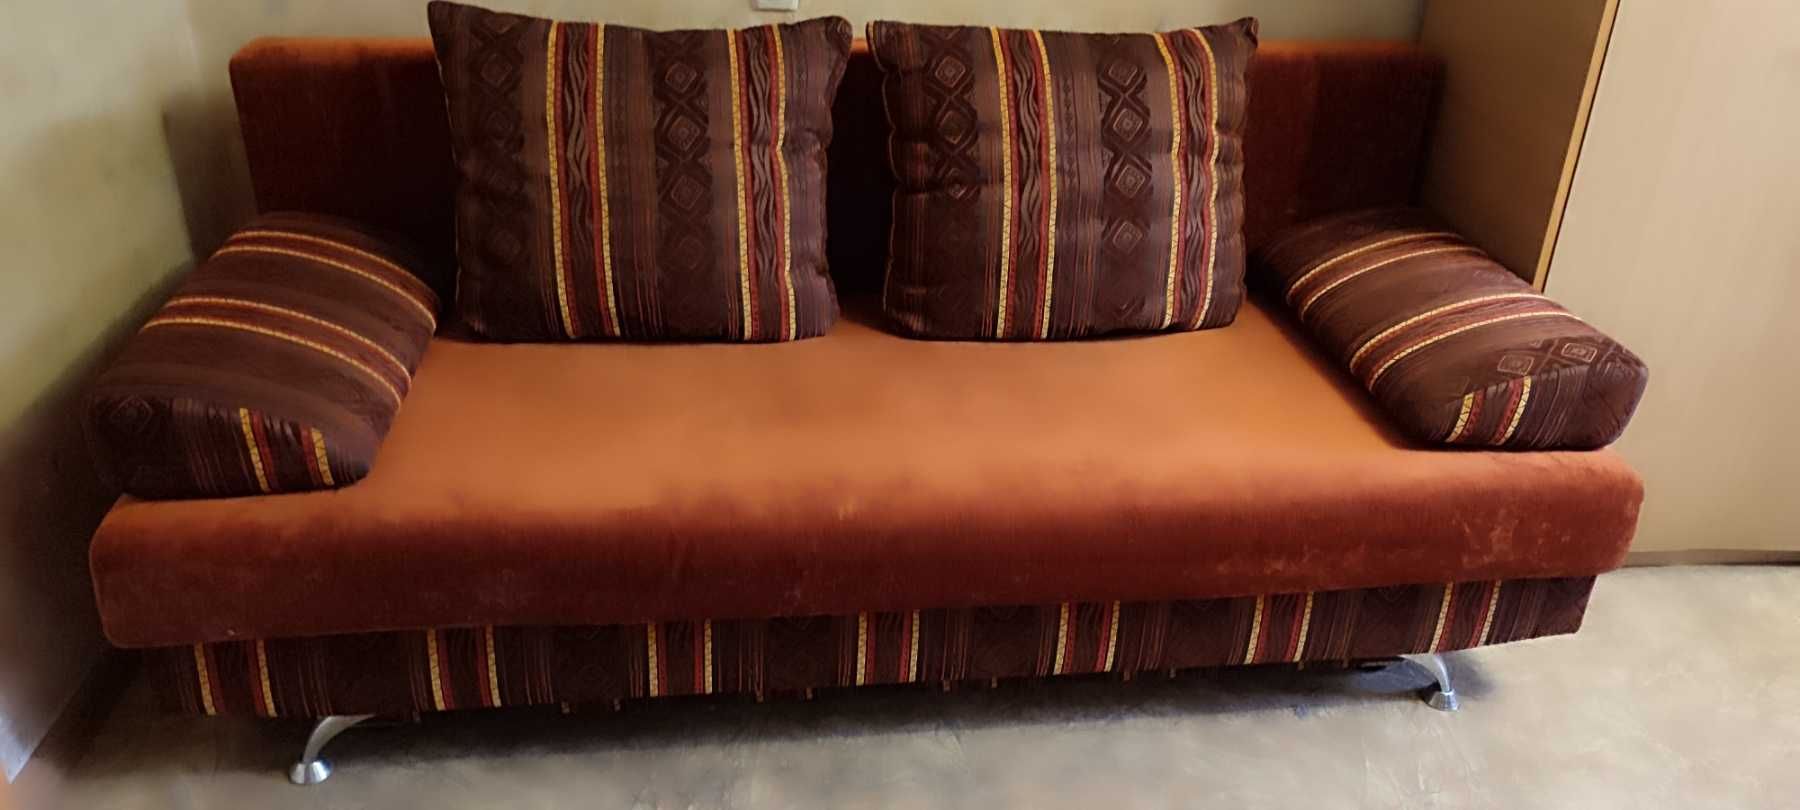 Продам диван раскладной 160/2000  б/у  2000грн